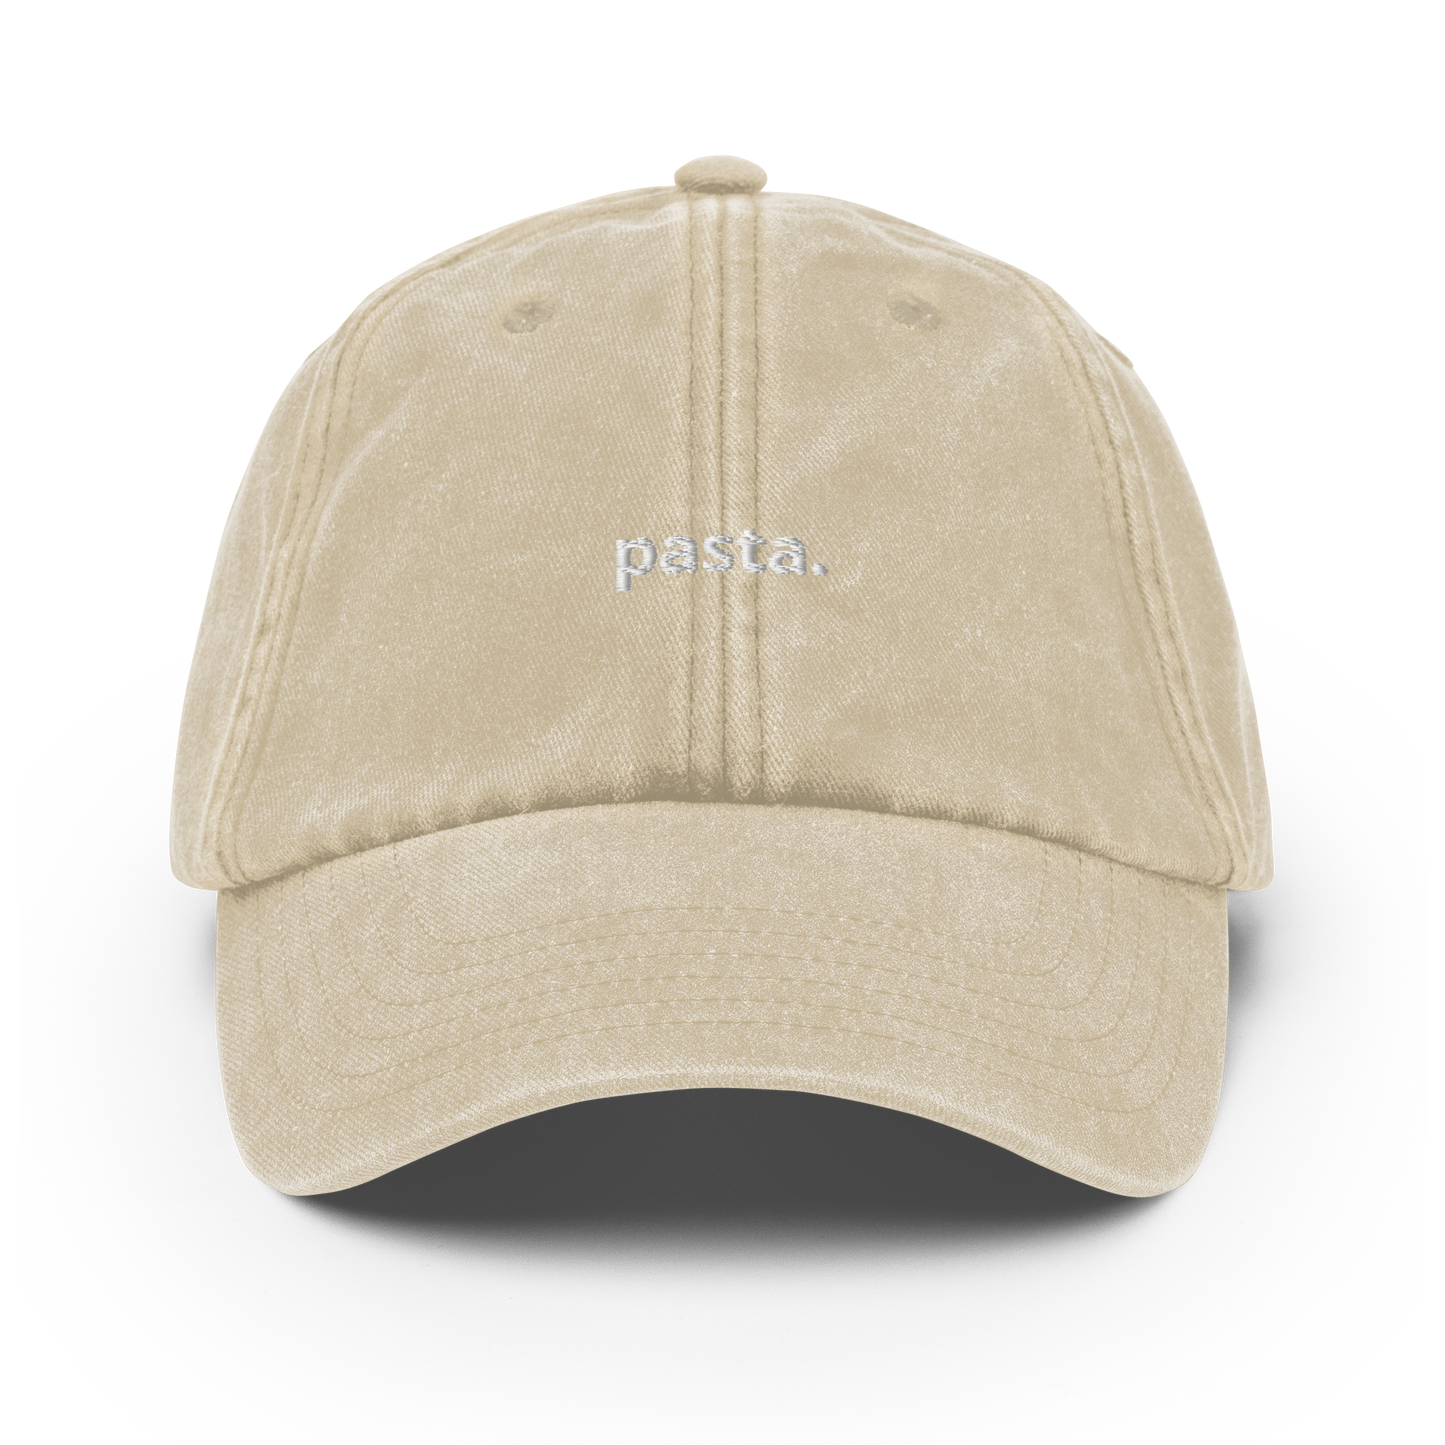 Pasta - Vintage Hat